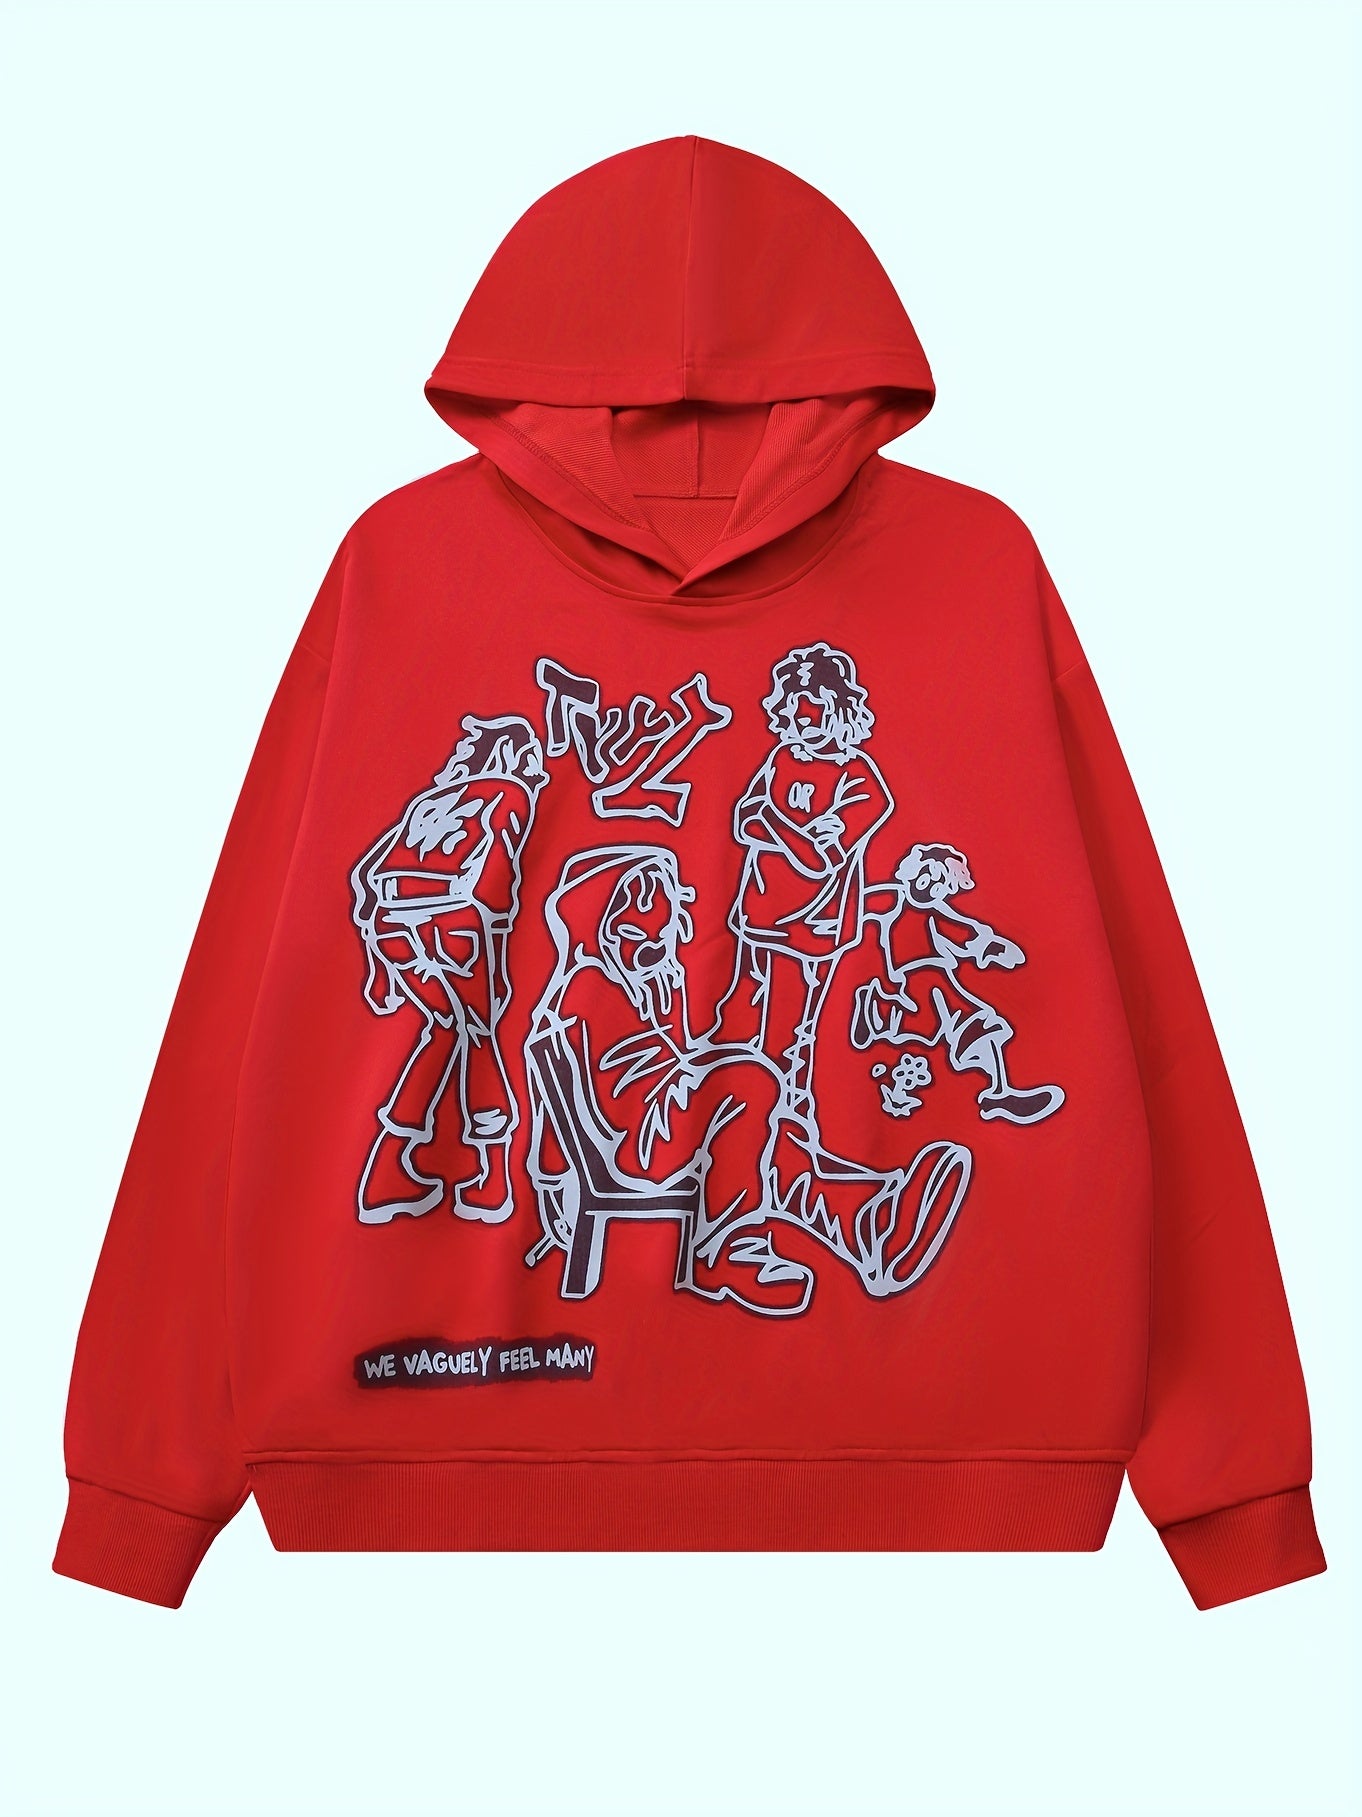 Cartoon Graphic Print Hoodie, Baddie Clothes Long Sleeve Hoodies Sweatshirt, Women's Clothing